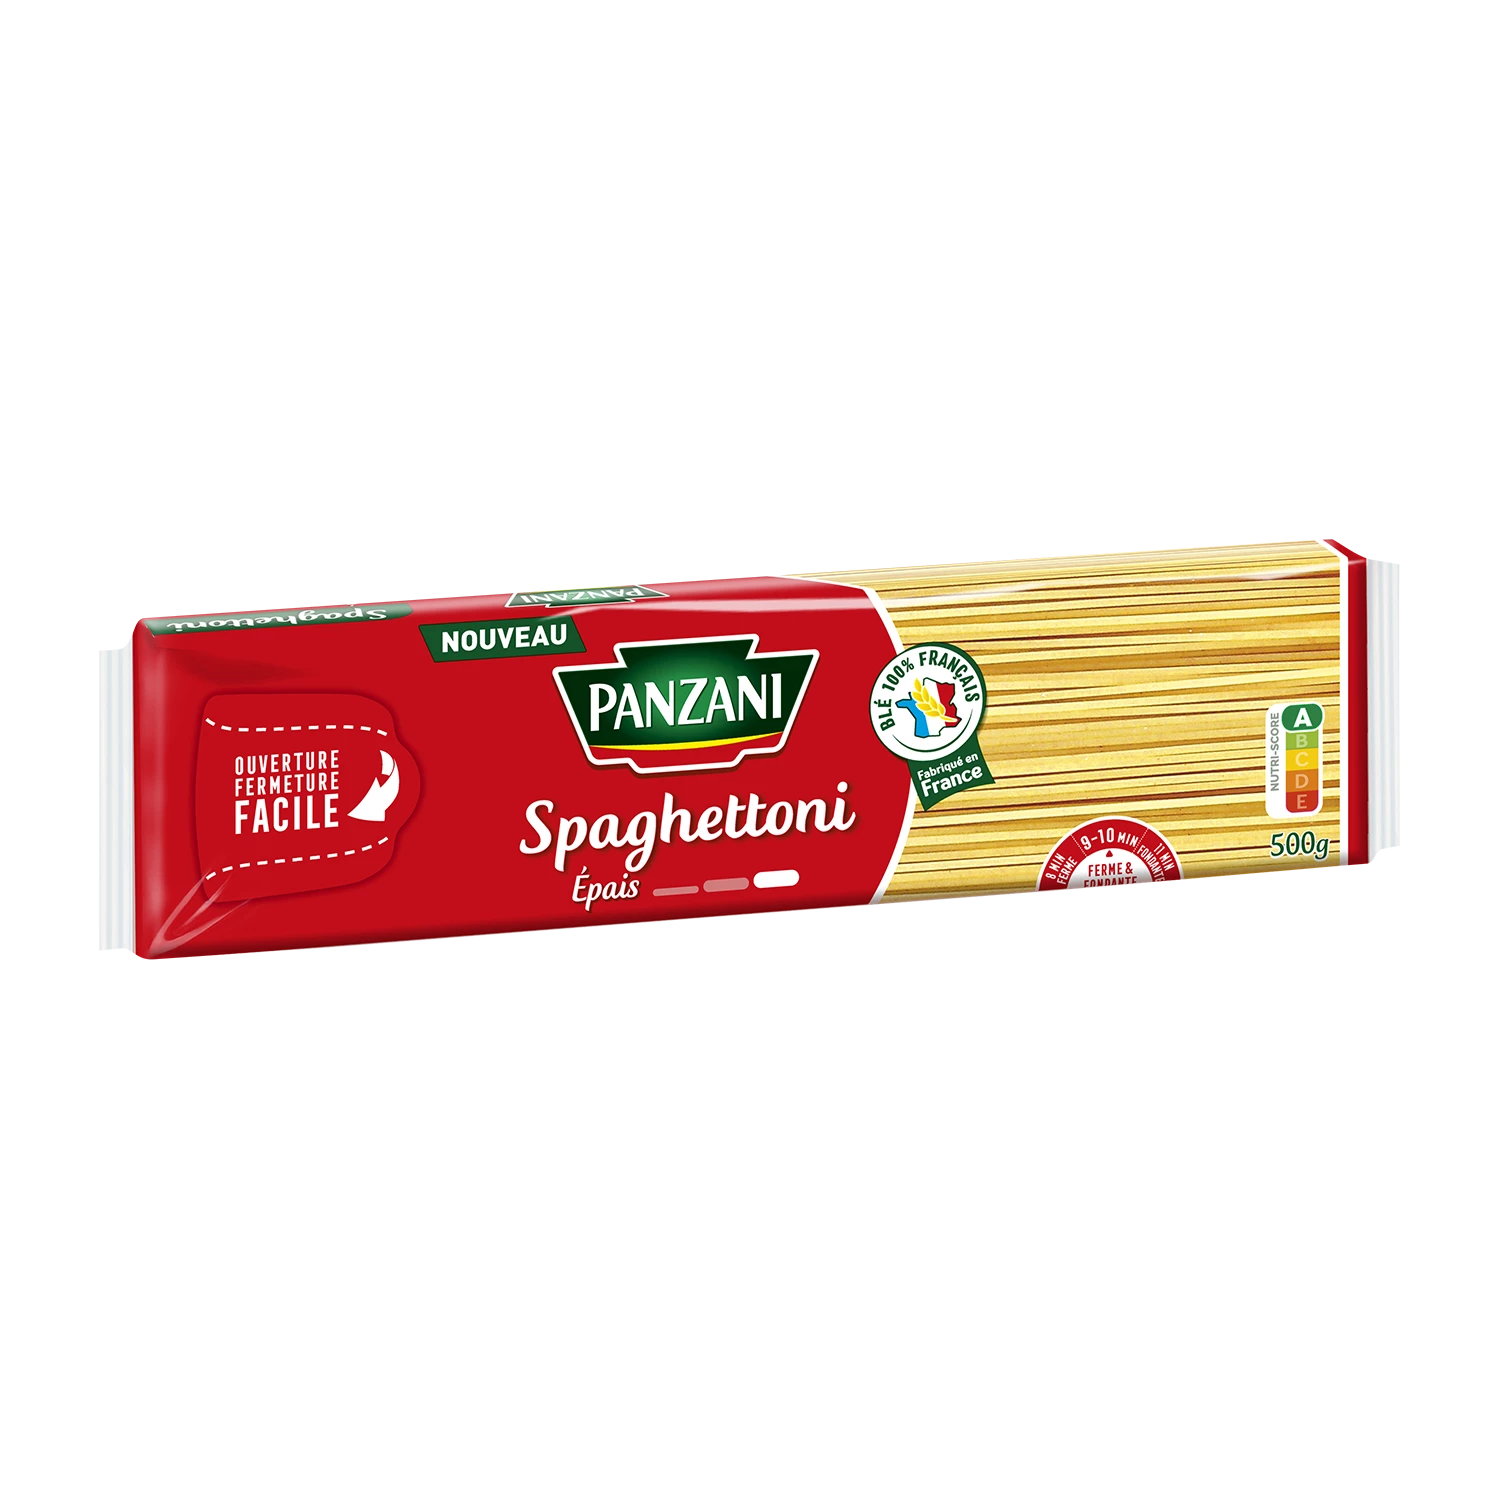 Panzani Spaghettoni 500g